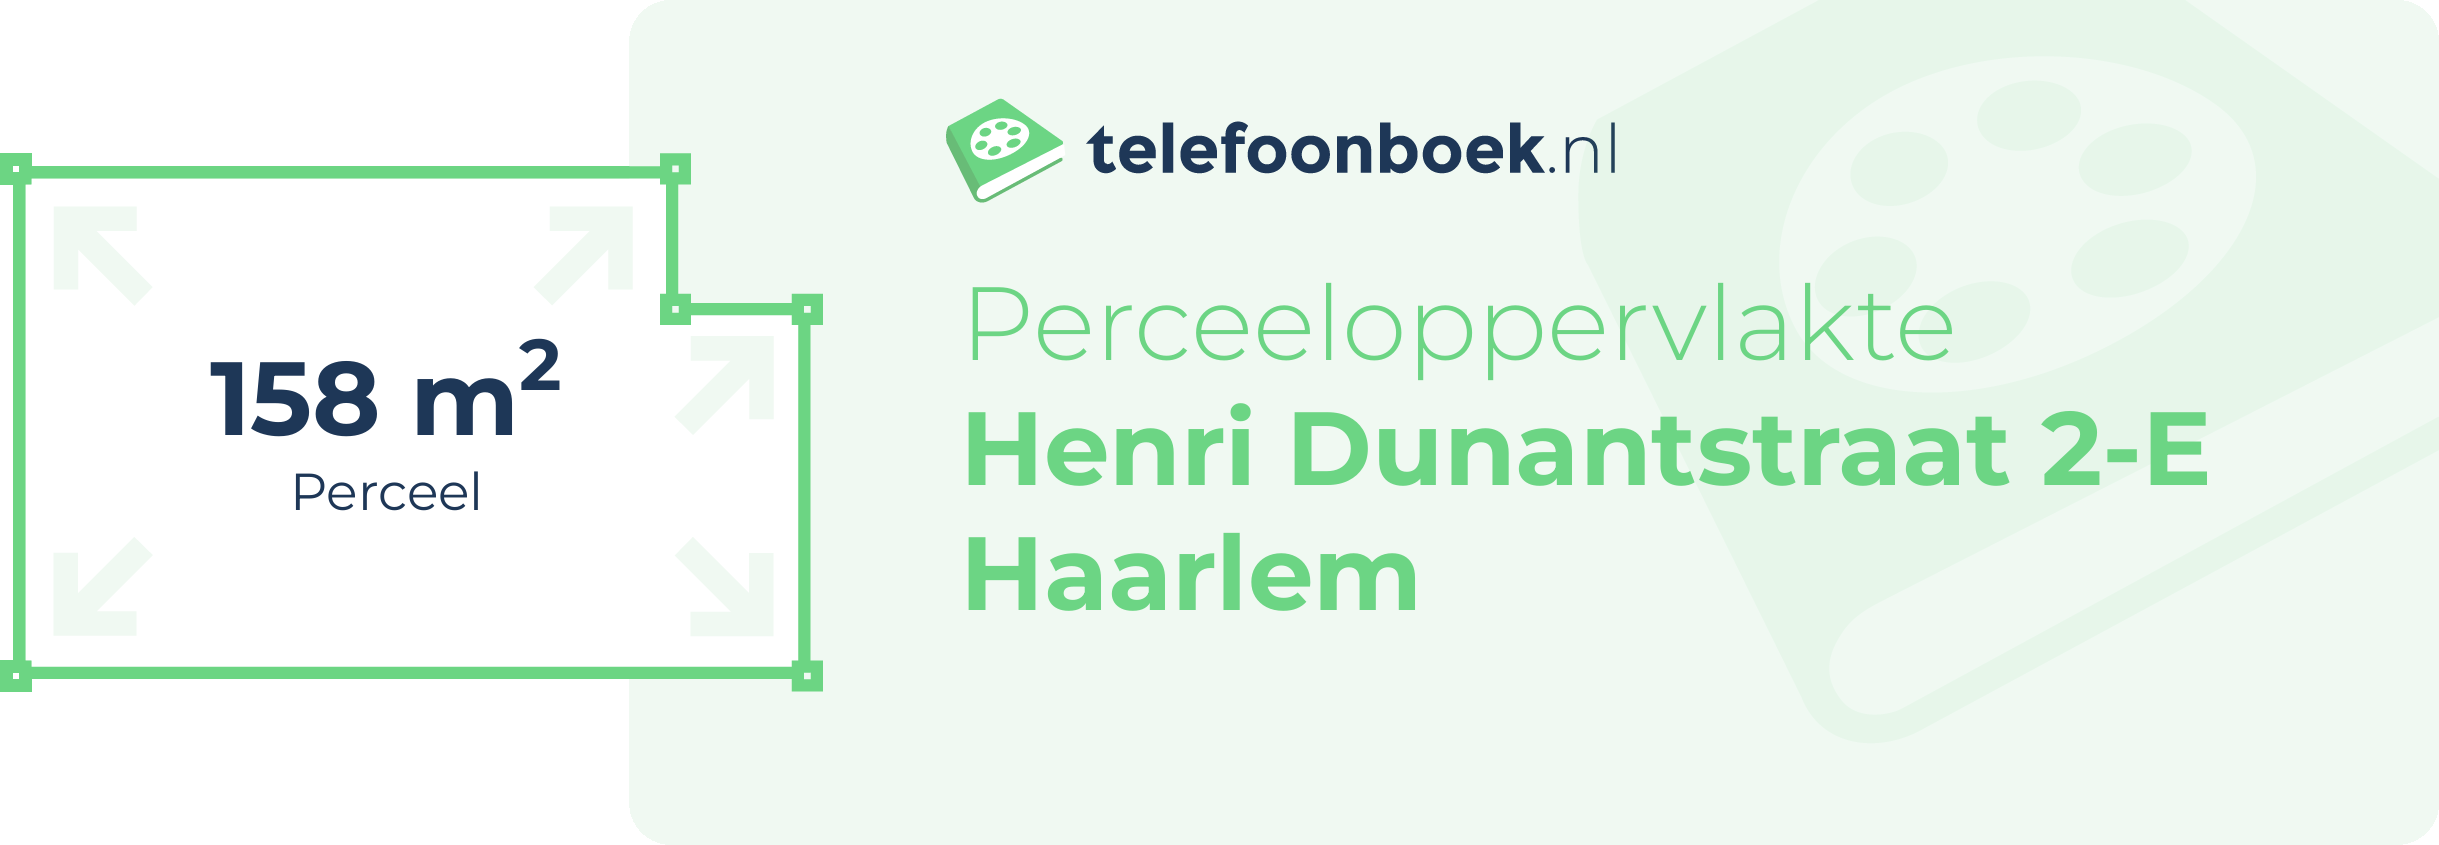 Perceeloppervlakte Henri Dunantstraat 2-E Haarlem